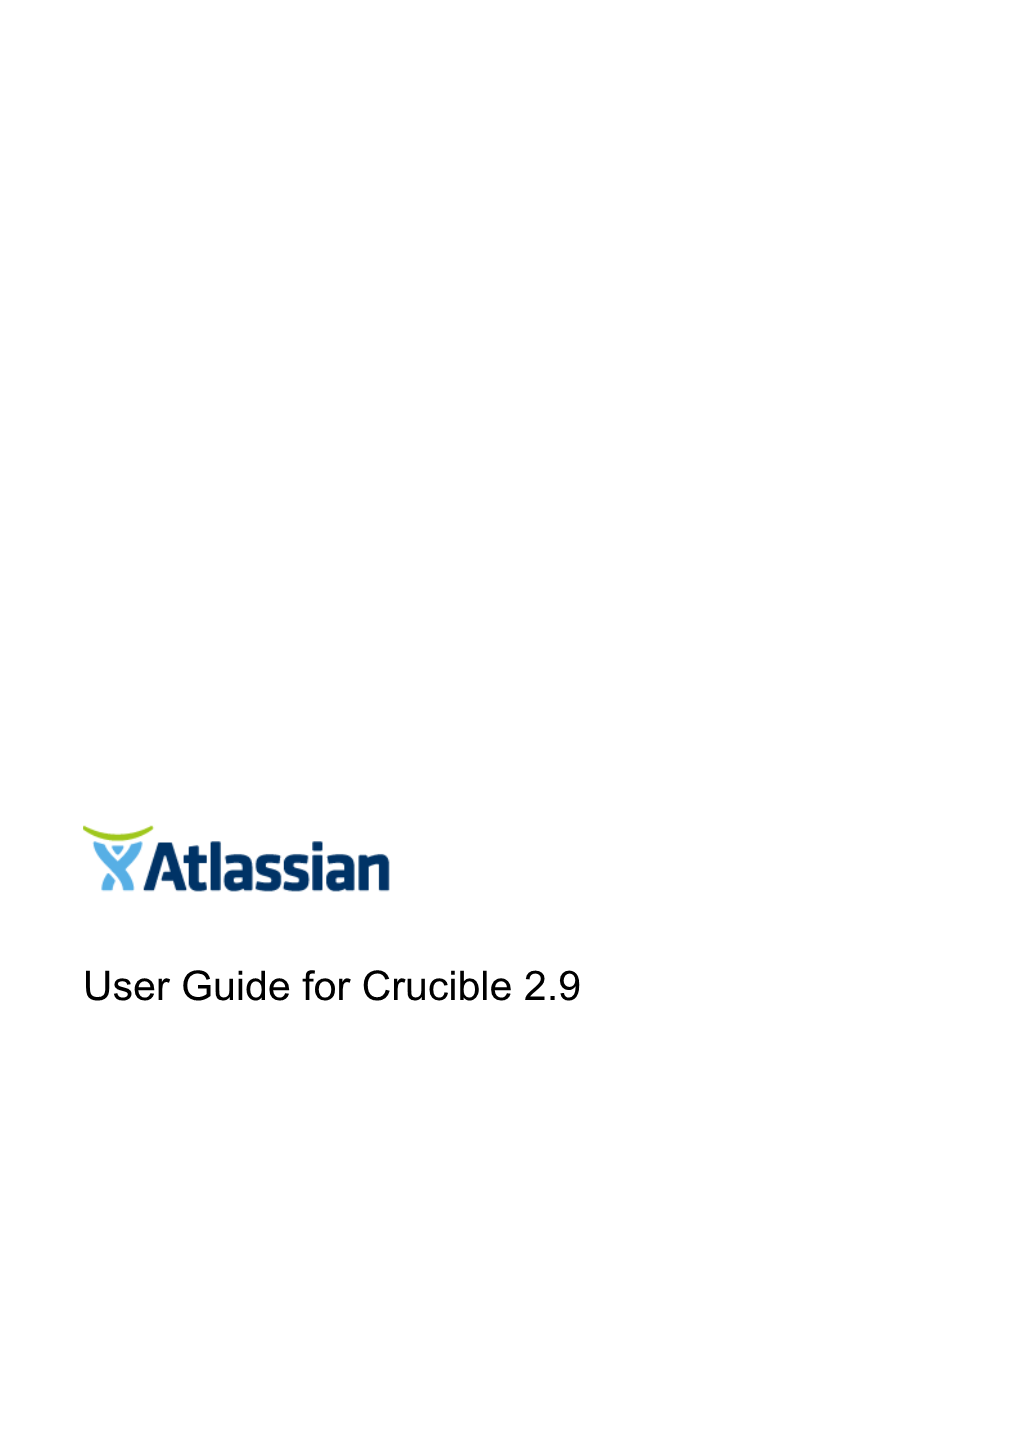 User Guide for Crucible 2.9 User Guide for Crucible 2.9 2